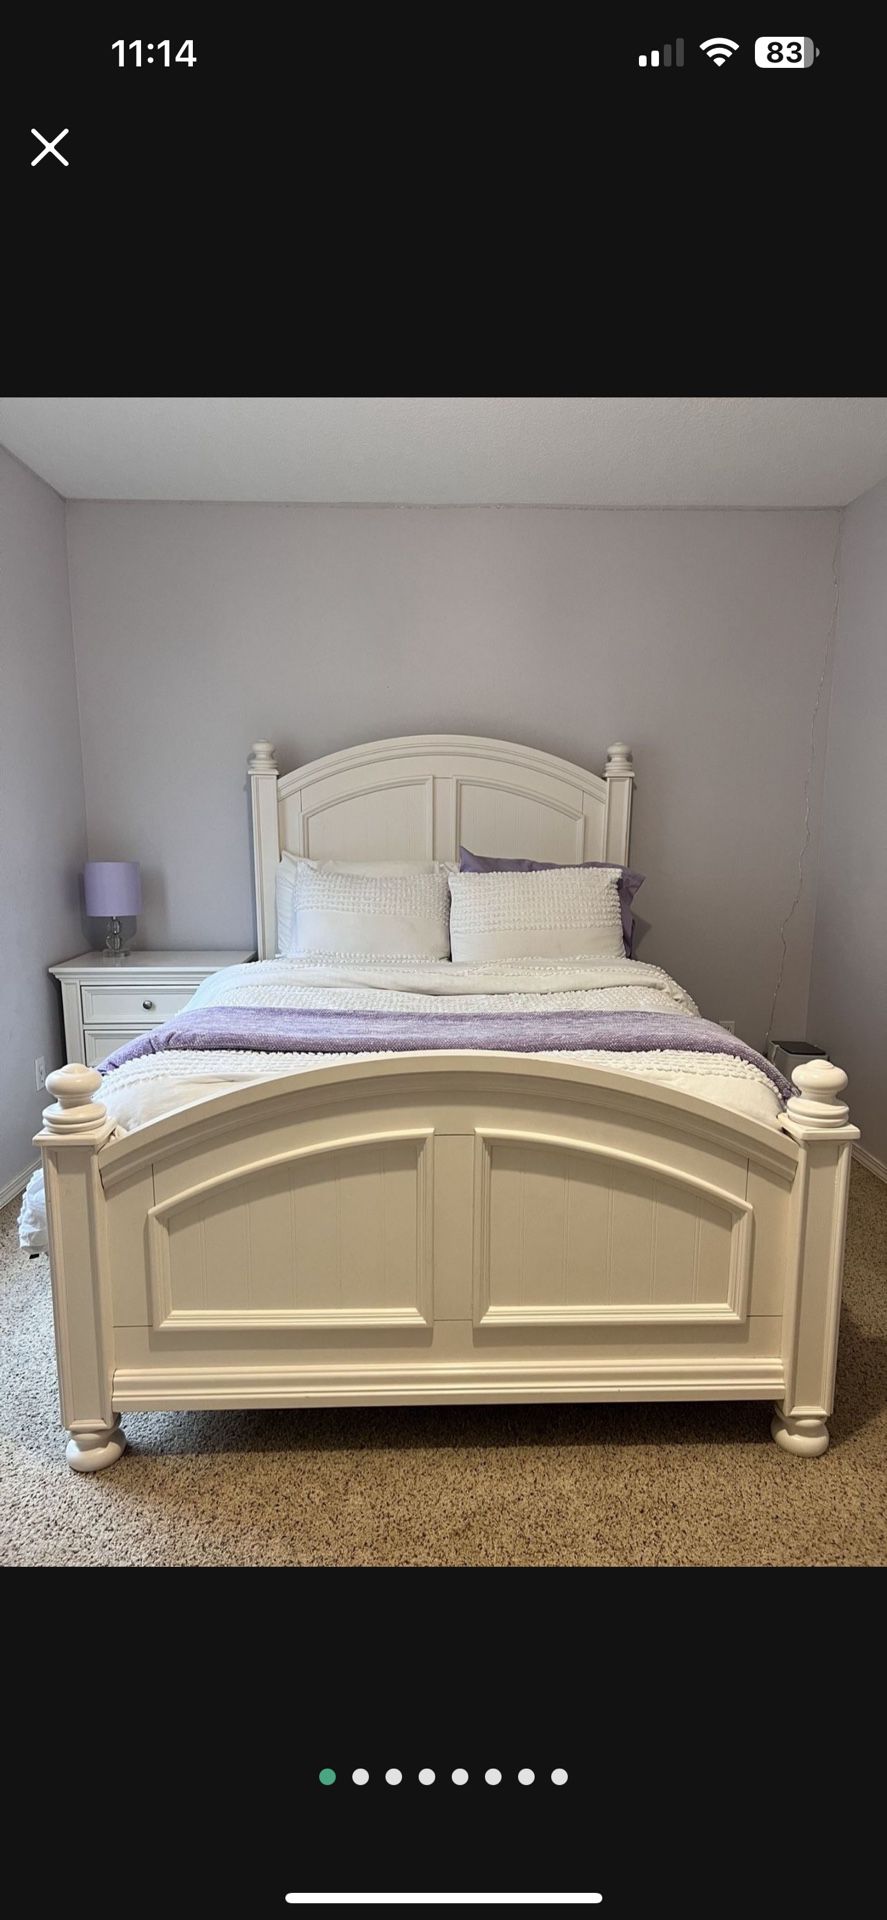 White Full/Queen 3 Pc Bedroom Set